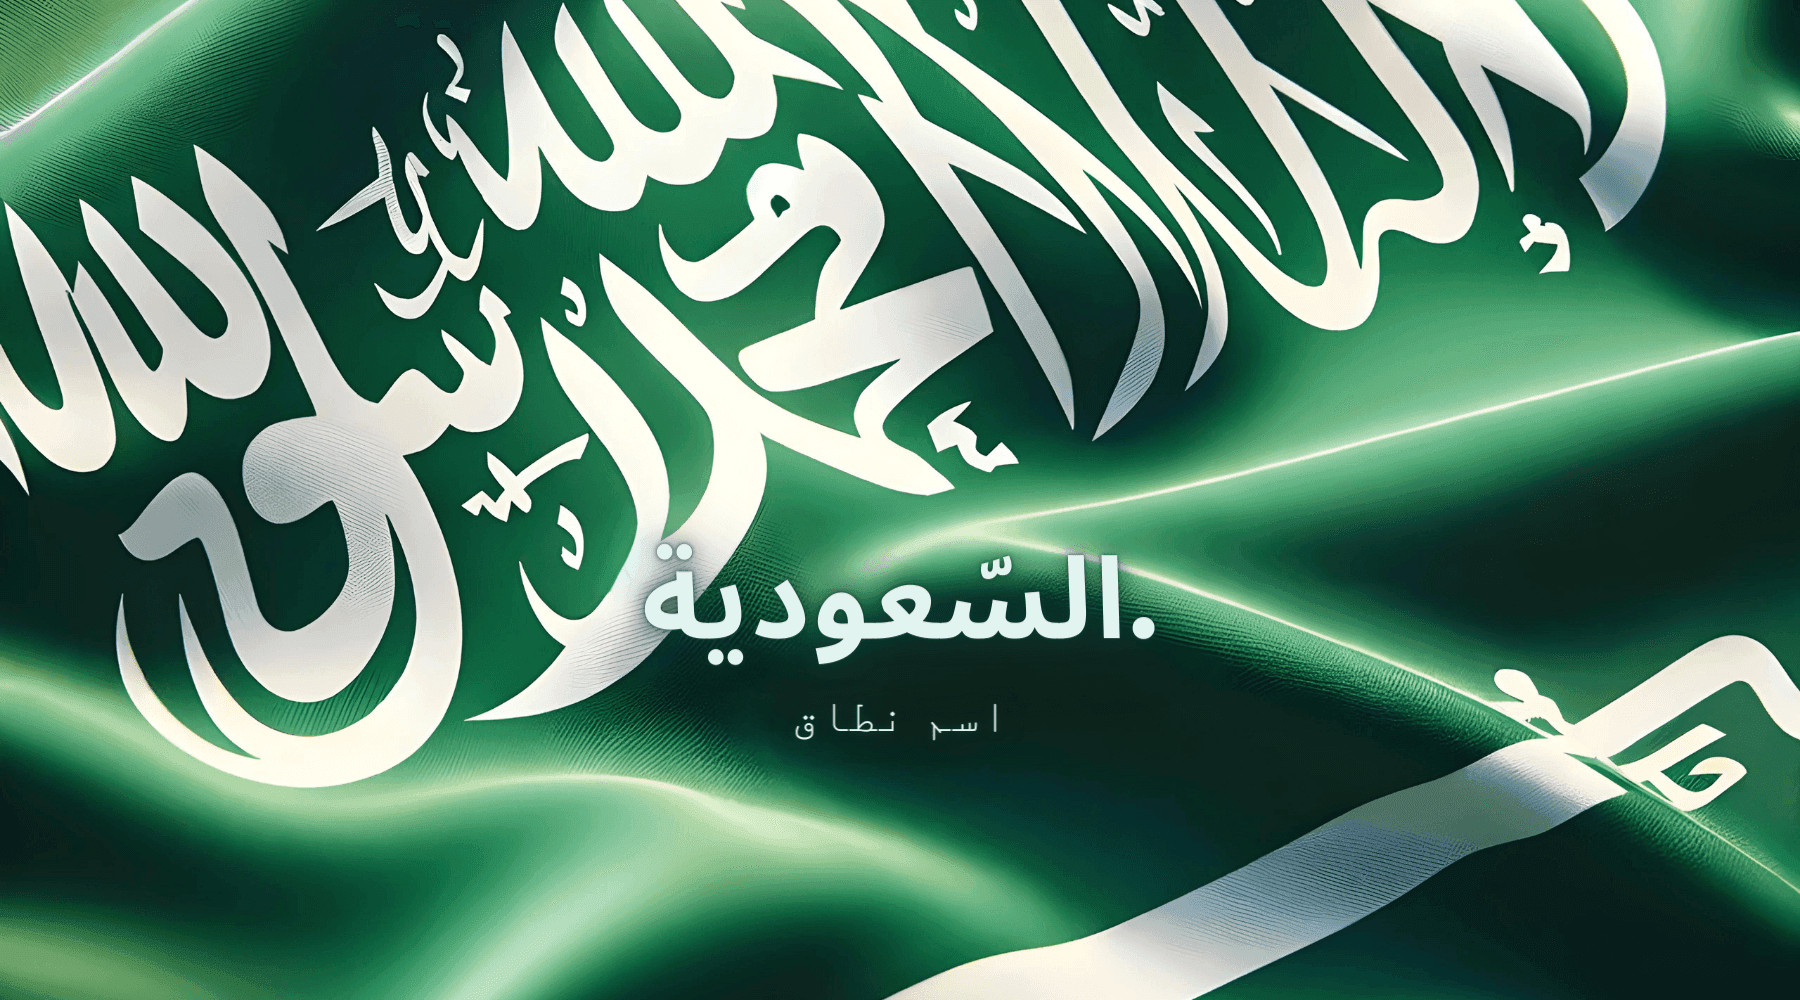 السّعودية background image